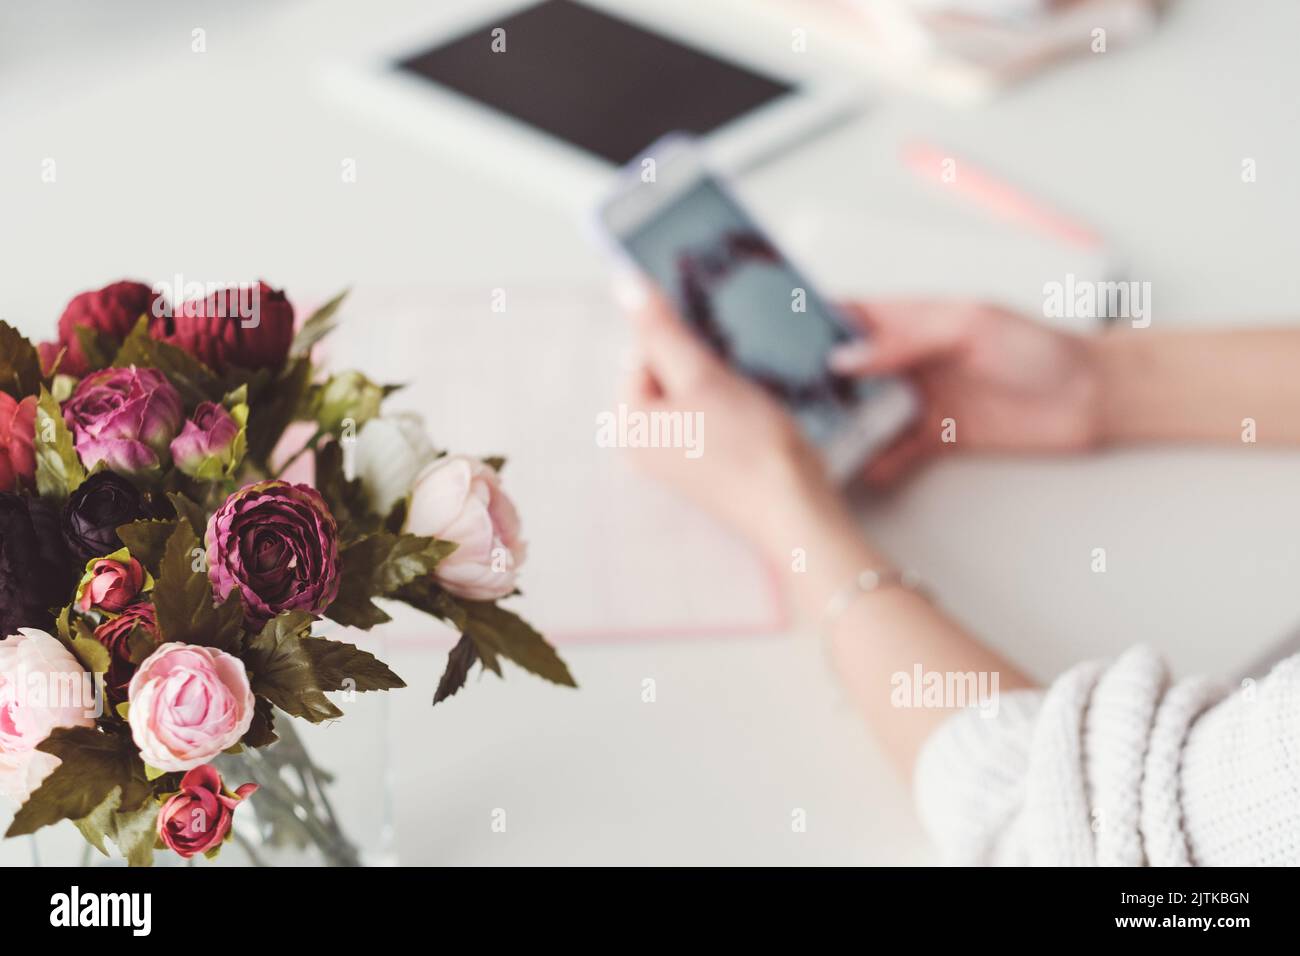 Home Office persönlicher Stil Blumen Inspiration Stockfoto